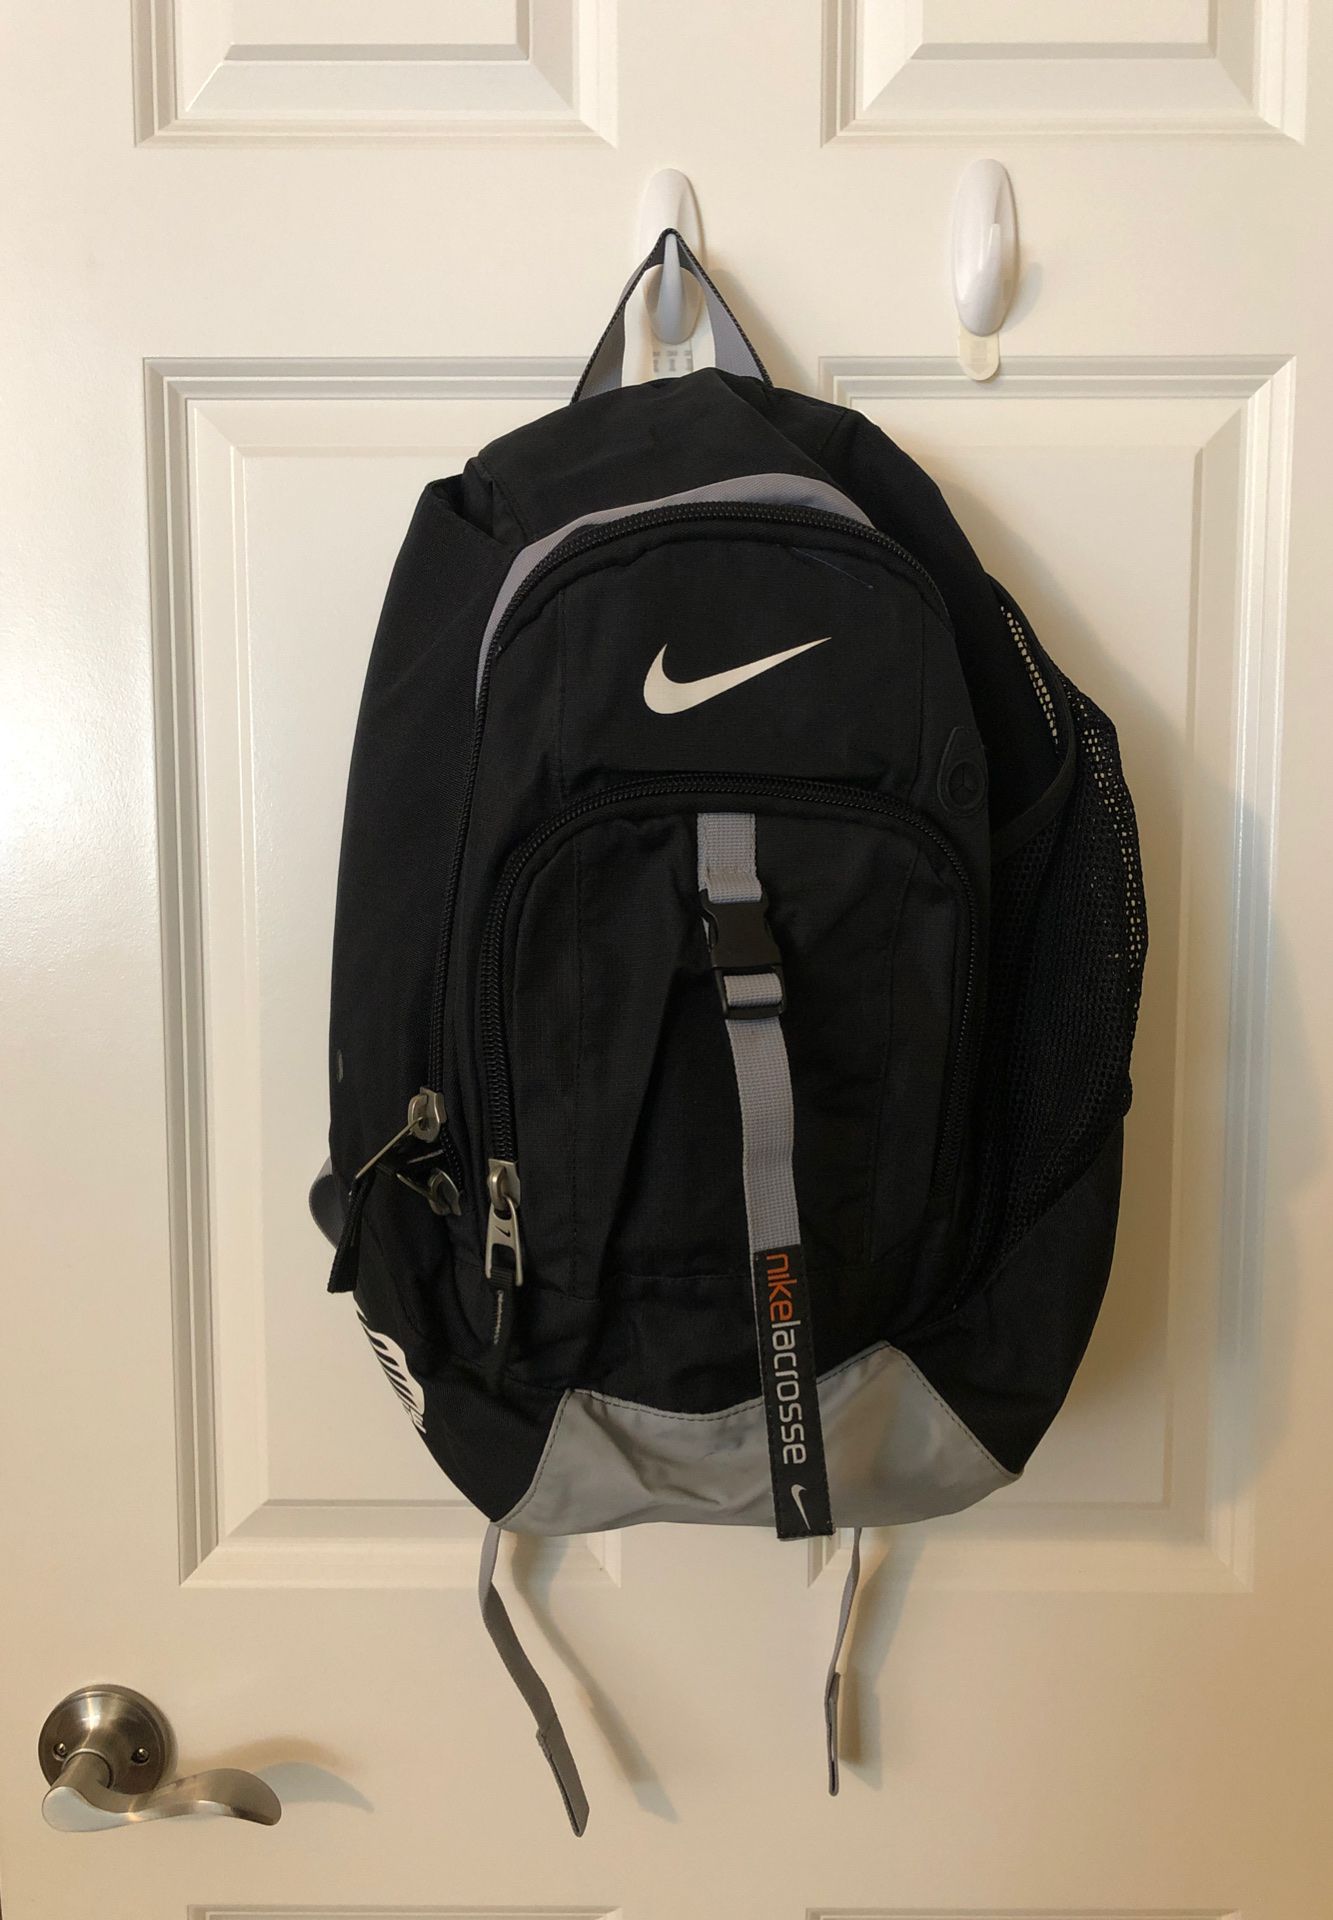 Nike Lacrosse Backpack